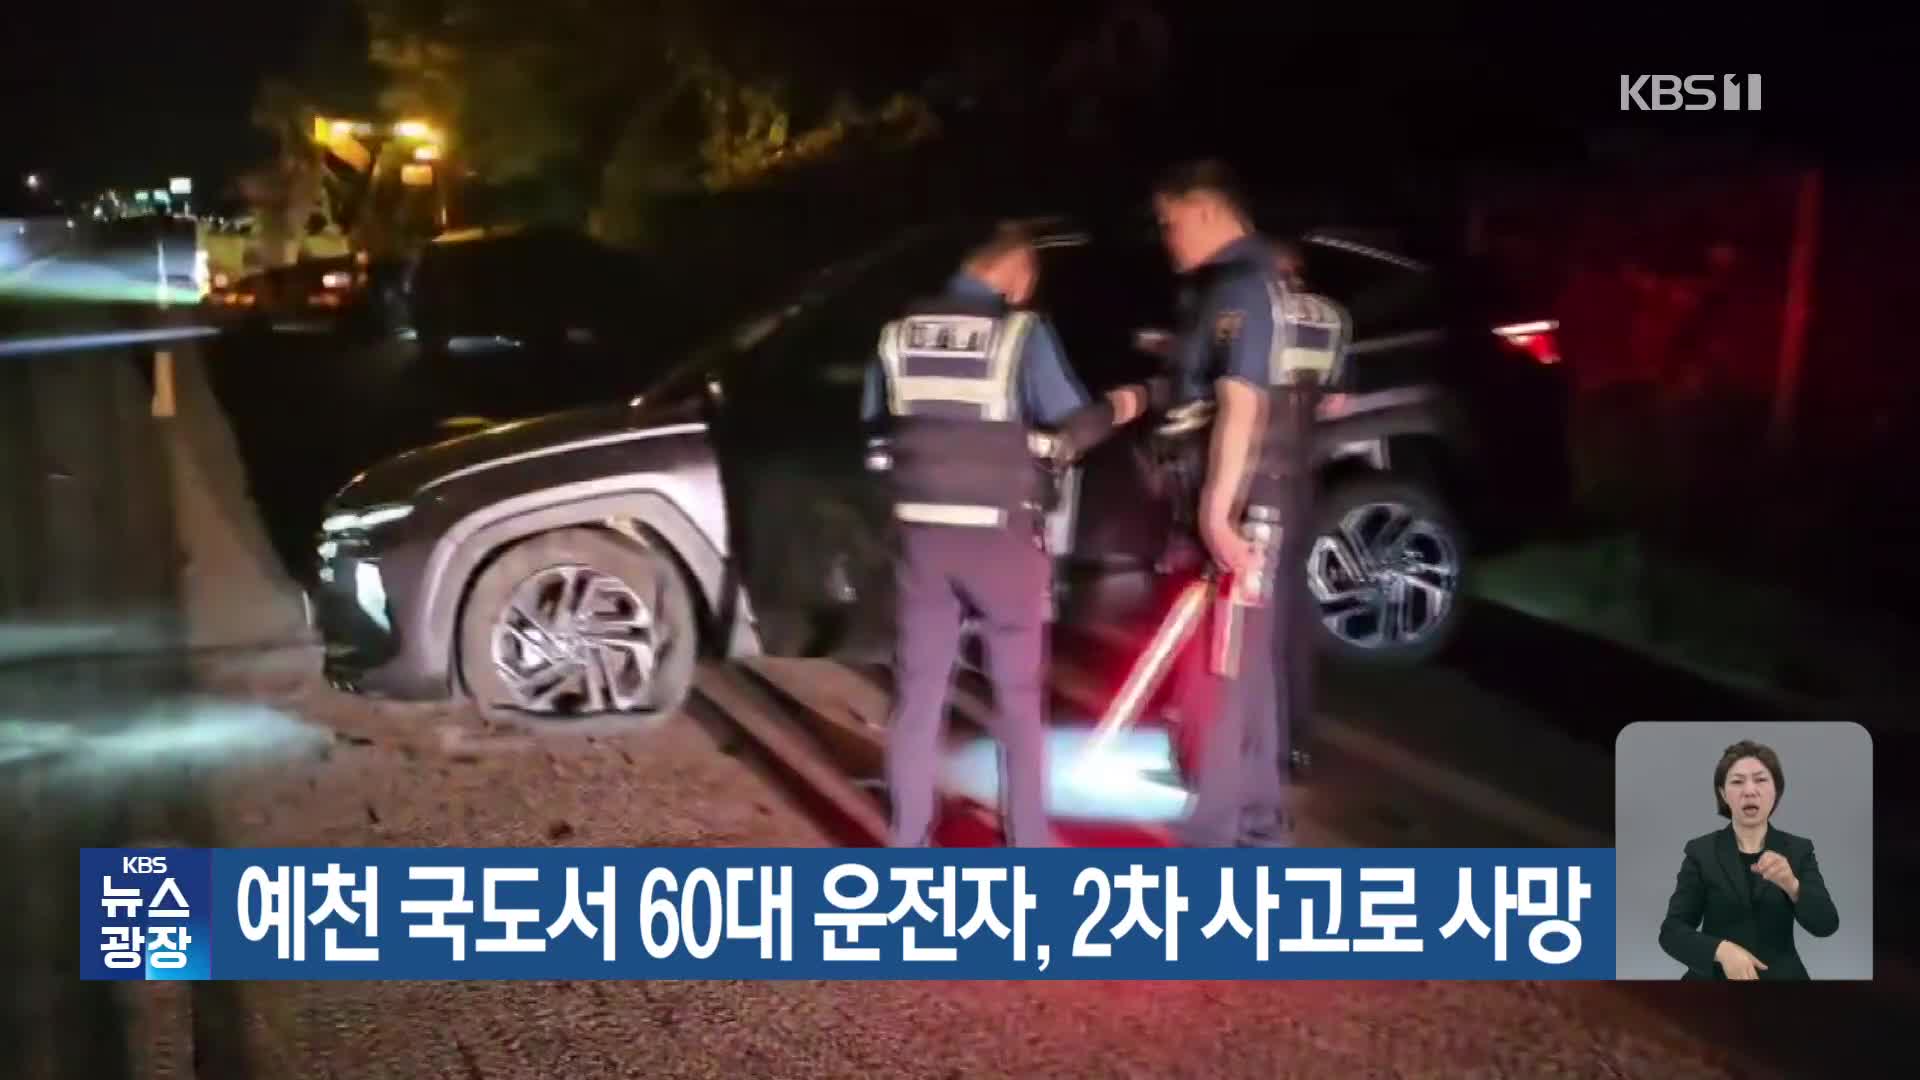 예천 국도서 60대 운전자, 2차 사고로 사망